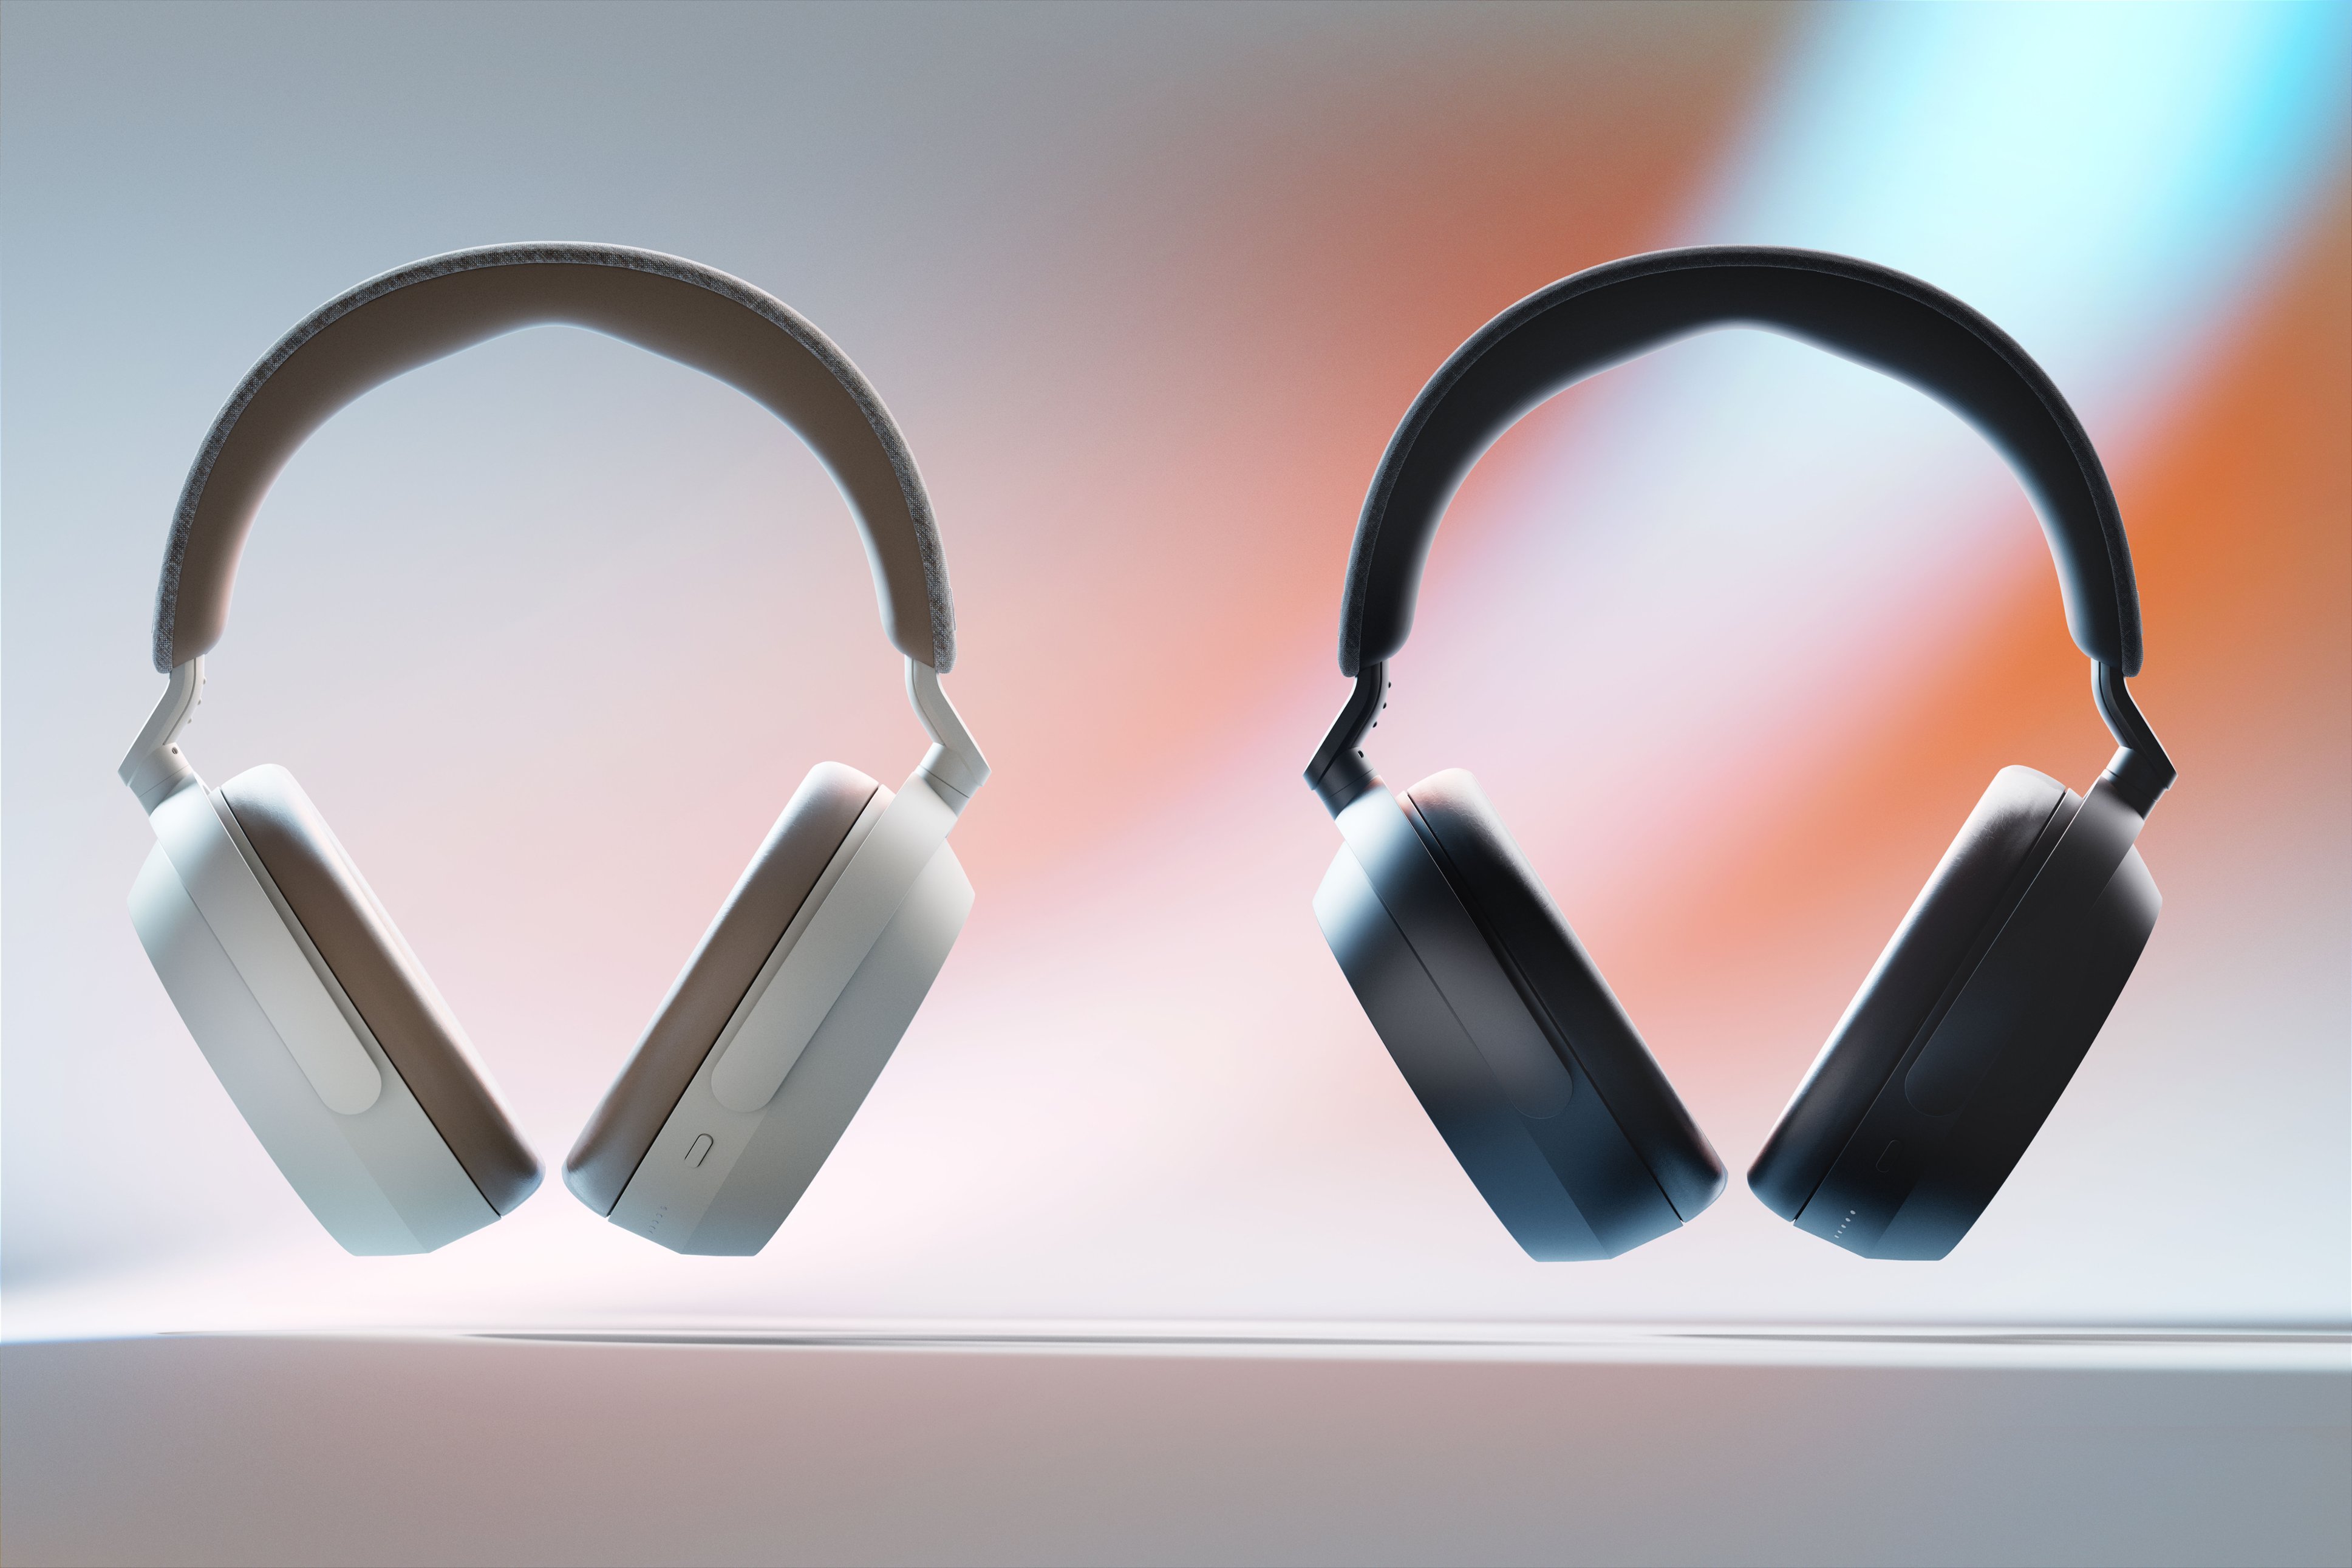 Sennheiser Momentum 4 Wireless Over-Ear Headphones